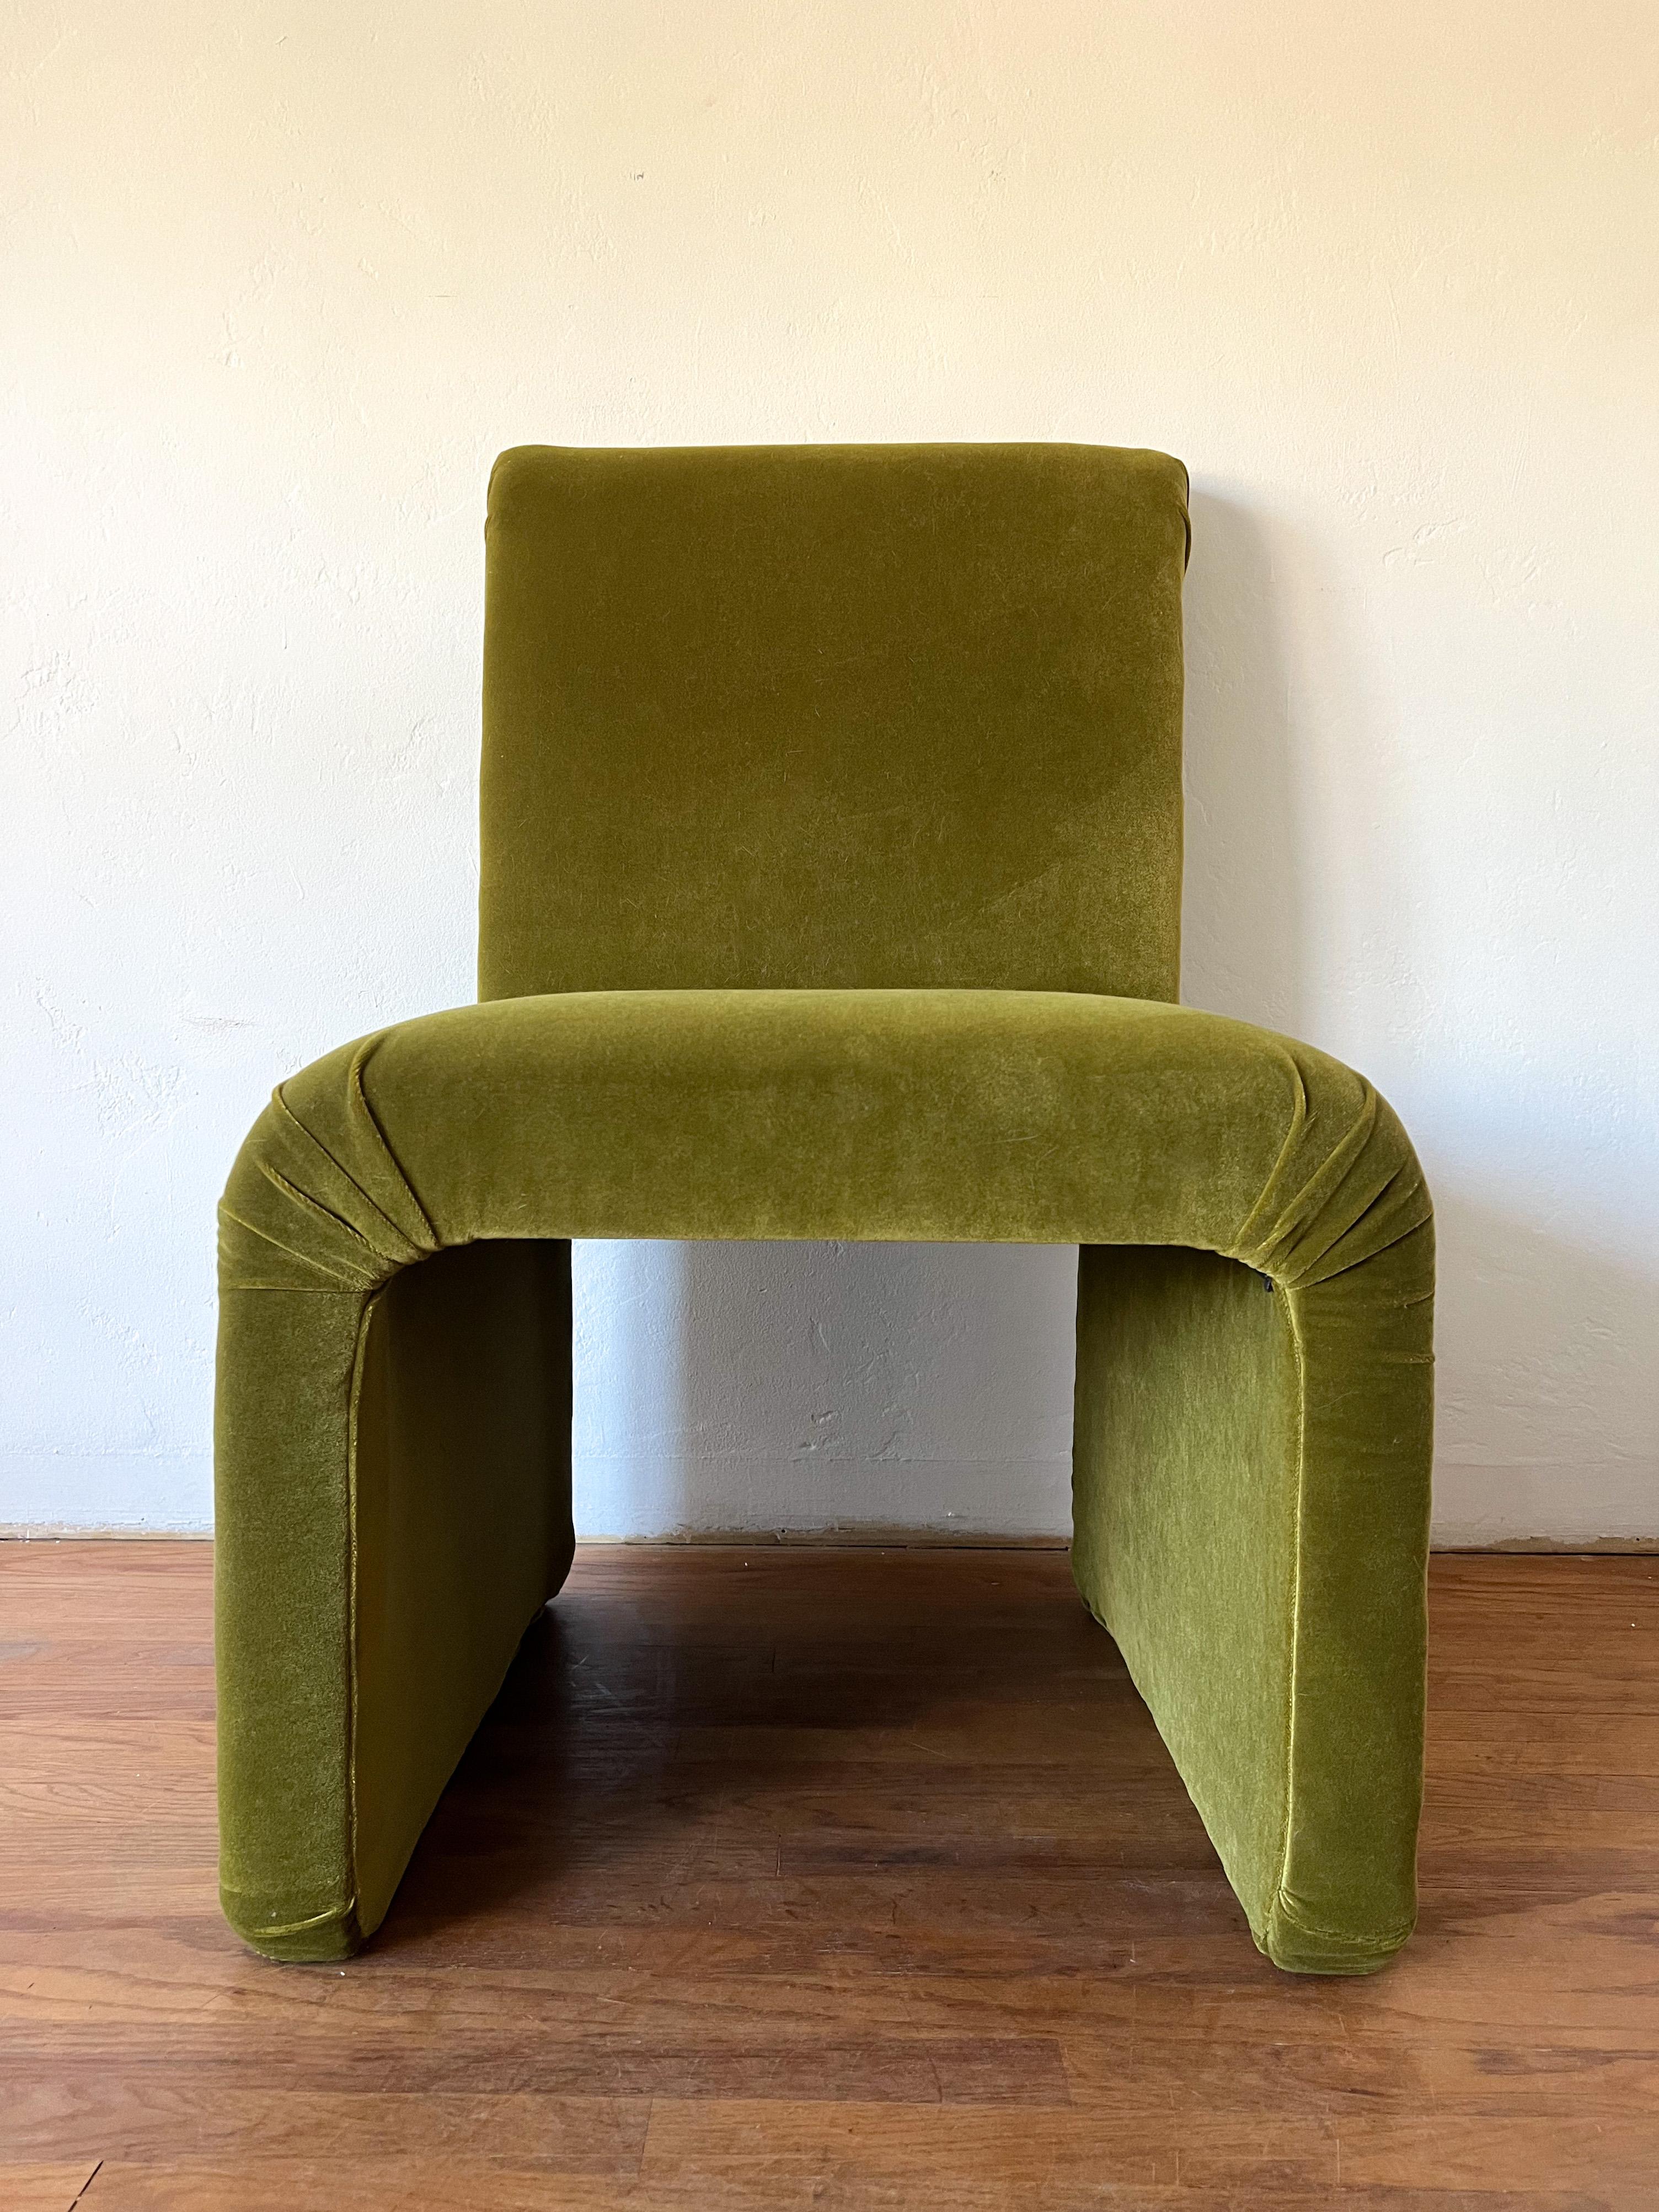 Il s'agit d'une chaise longue en cascade récemment retapissée dans le style du légendaire designer de meubles emblématique Karl Springer.  Le tissu est un velours très doux et de haute qualité. La couleur est une mousse riche. 